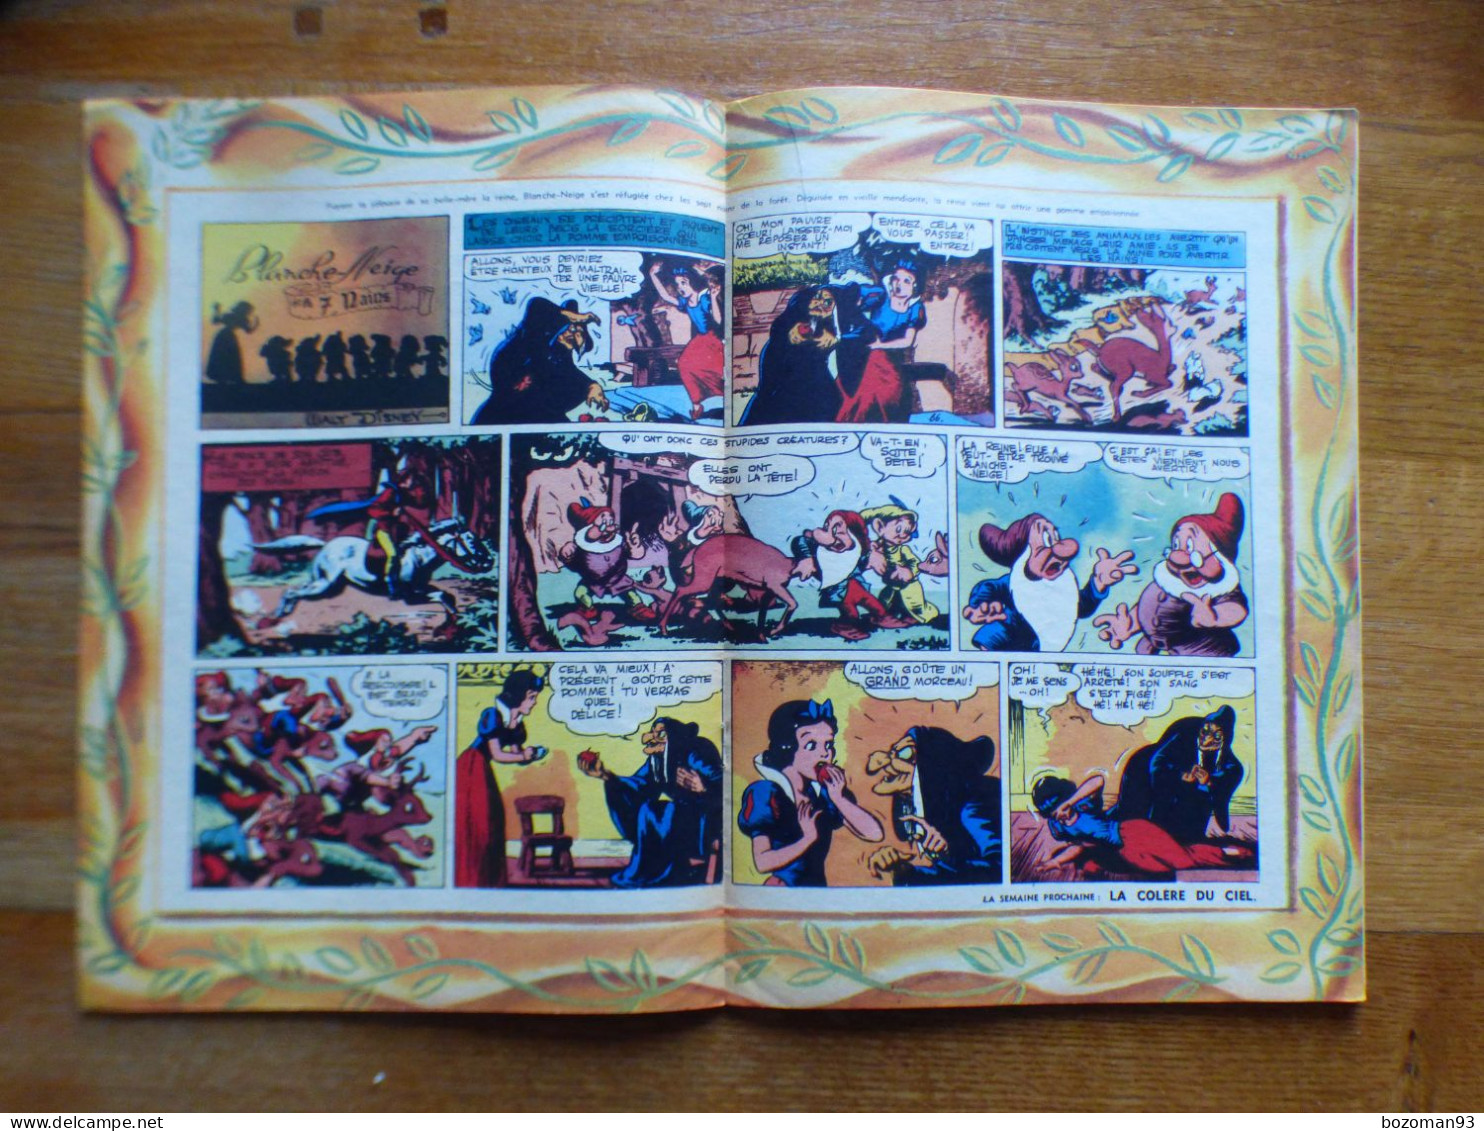 JOURNAL MICKEY BELGE  N° 66  Du 11/01/1952  COVER DONALD + BLANCHE NEIGE - Journal De Mickey